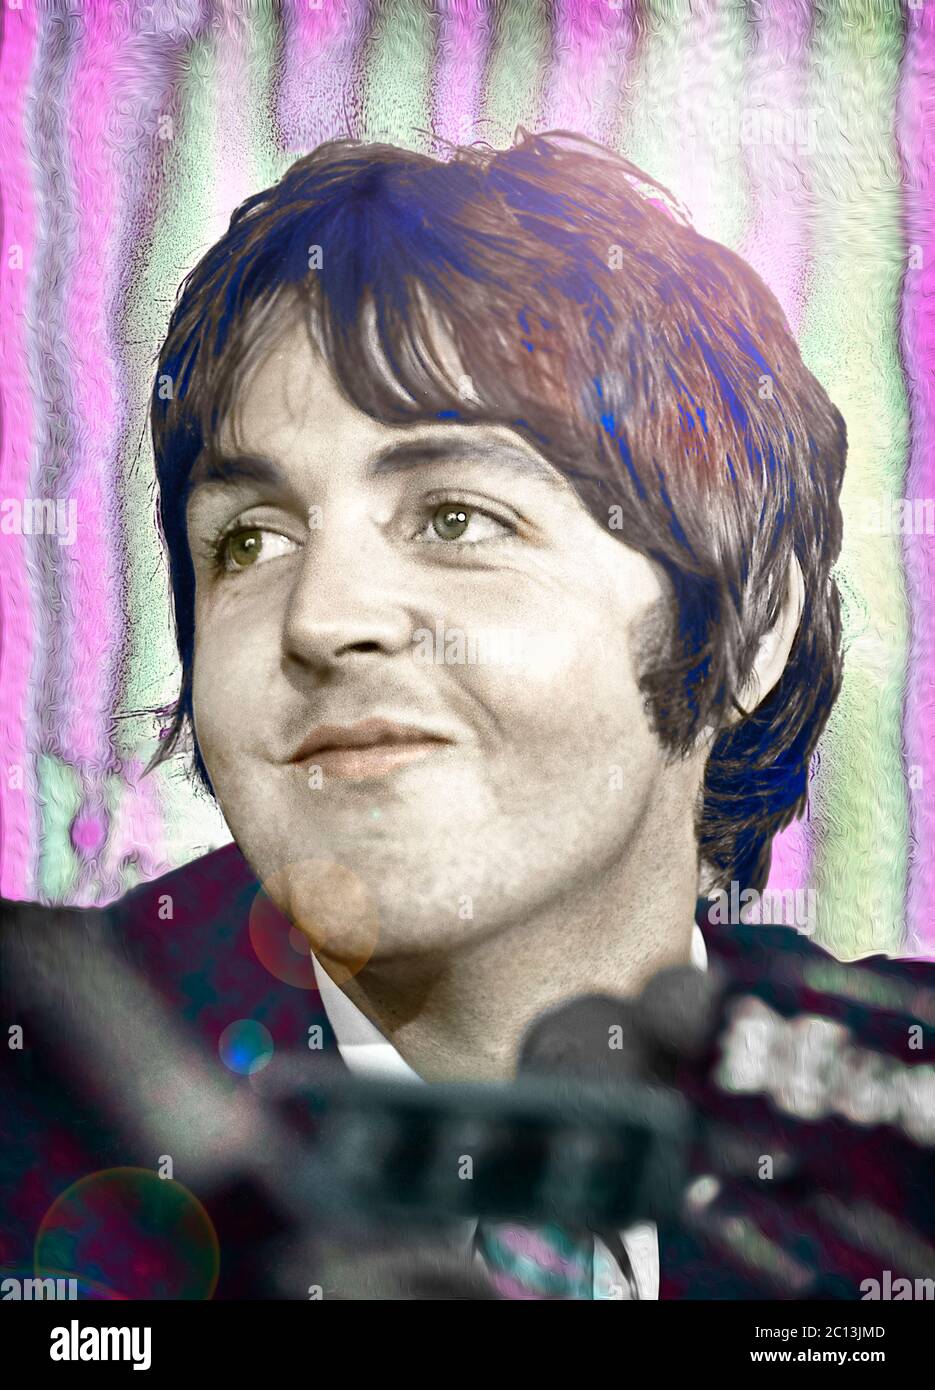 Paul McCartney in una conferenza stampa il 14 maggio 1968 a New York. Qui John e Paul hanno descritto la loro visione e le loro speranze per la loro nuova Apple Corp. Immagine colorata da 35 mm B&N negativo. Foto Stock